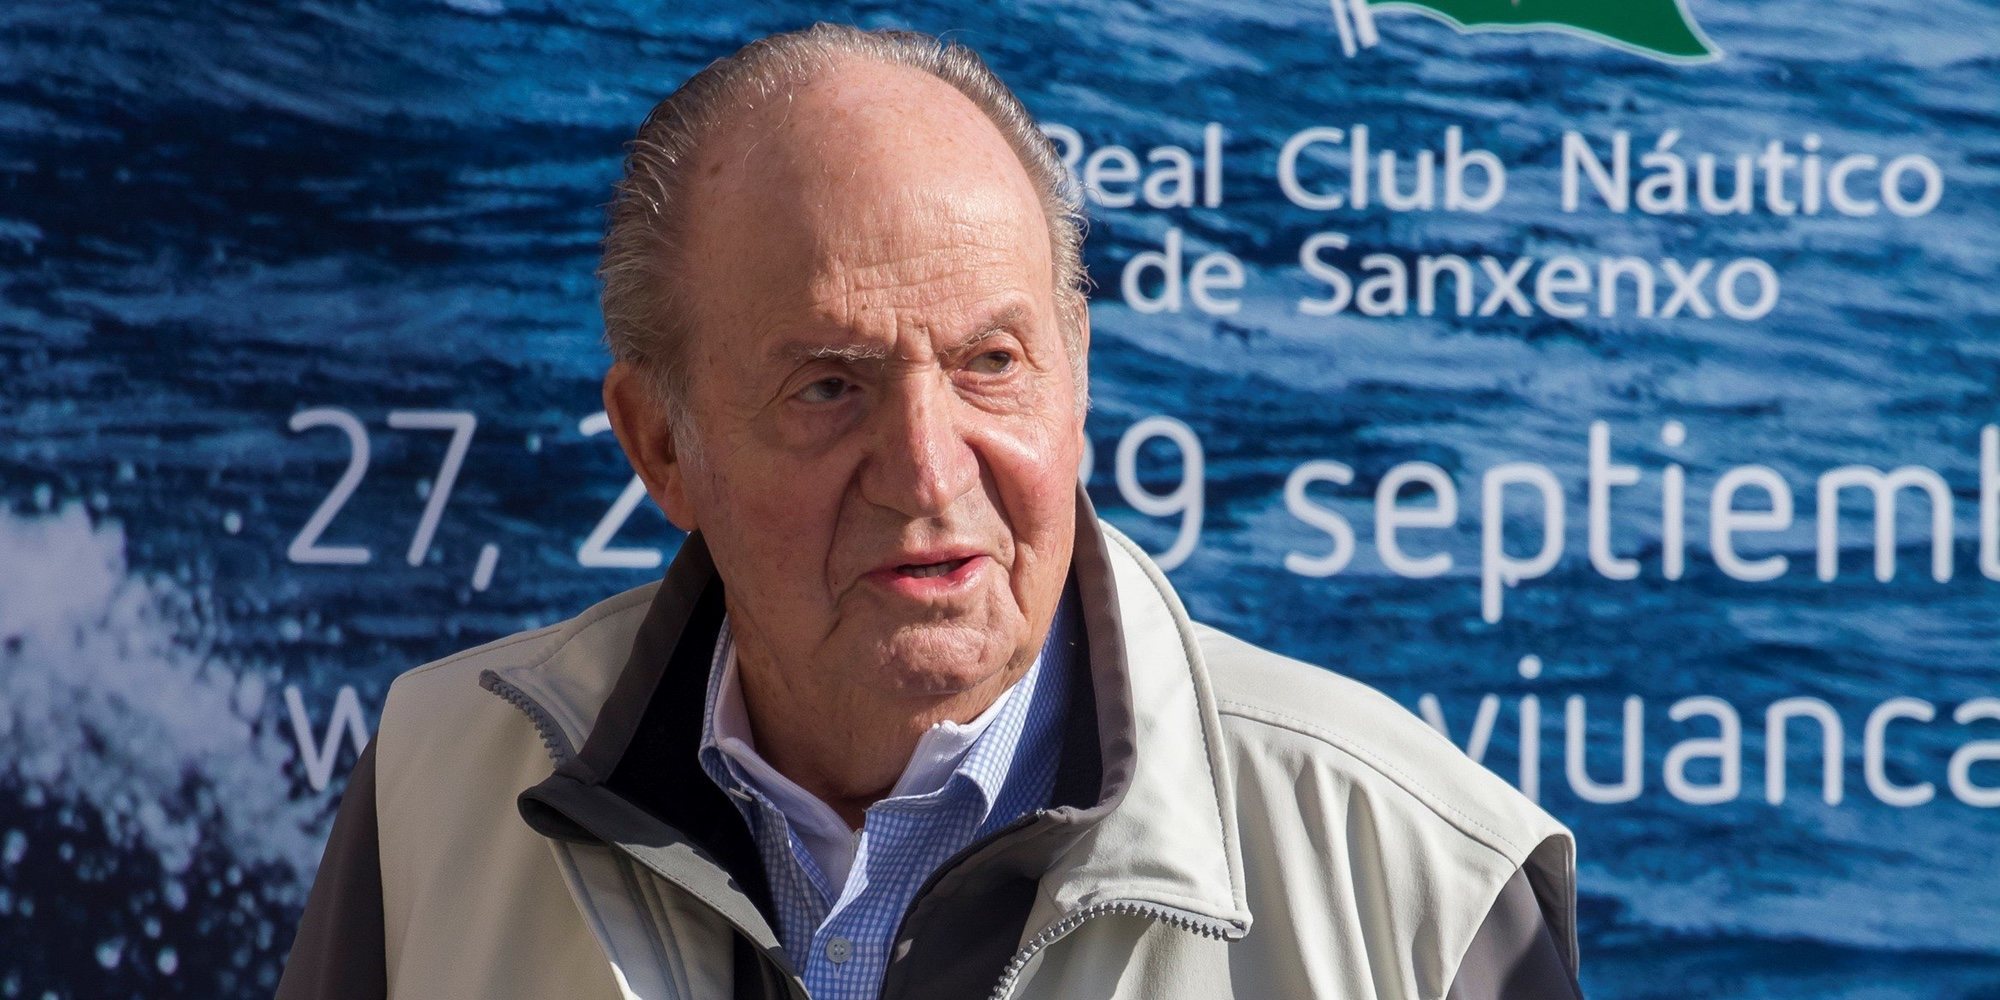 El Rey Juan Carlos sufre una caída al tropezar al salir de su coche